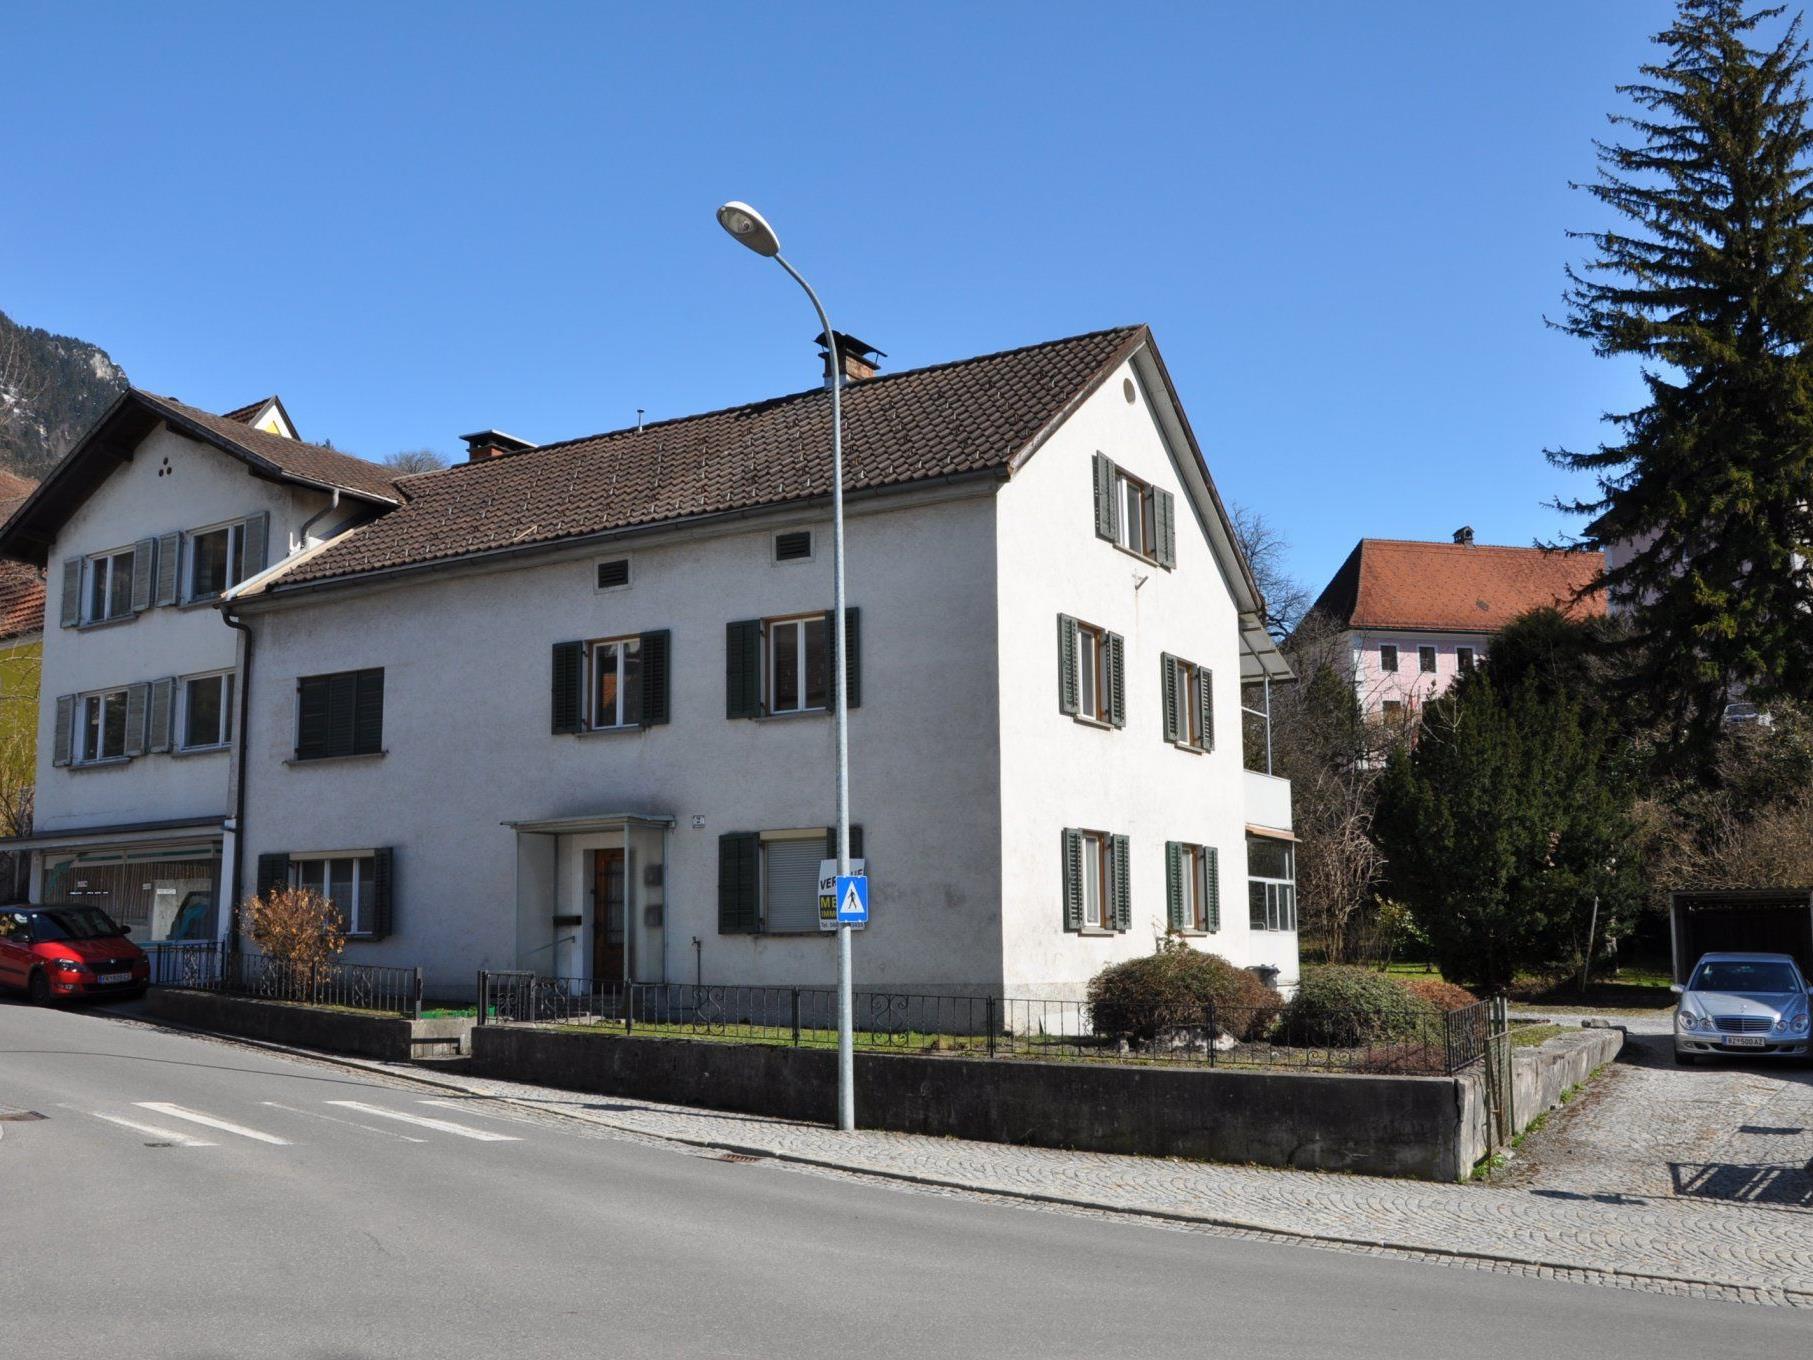 Haus und Grundstück Spitalgasse 2 und 2a werden von der Stadt Bludenz angekauft.